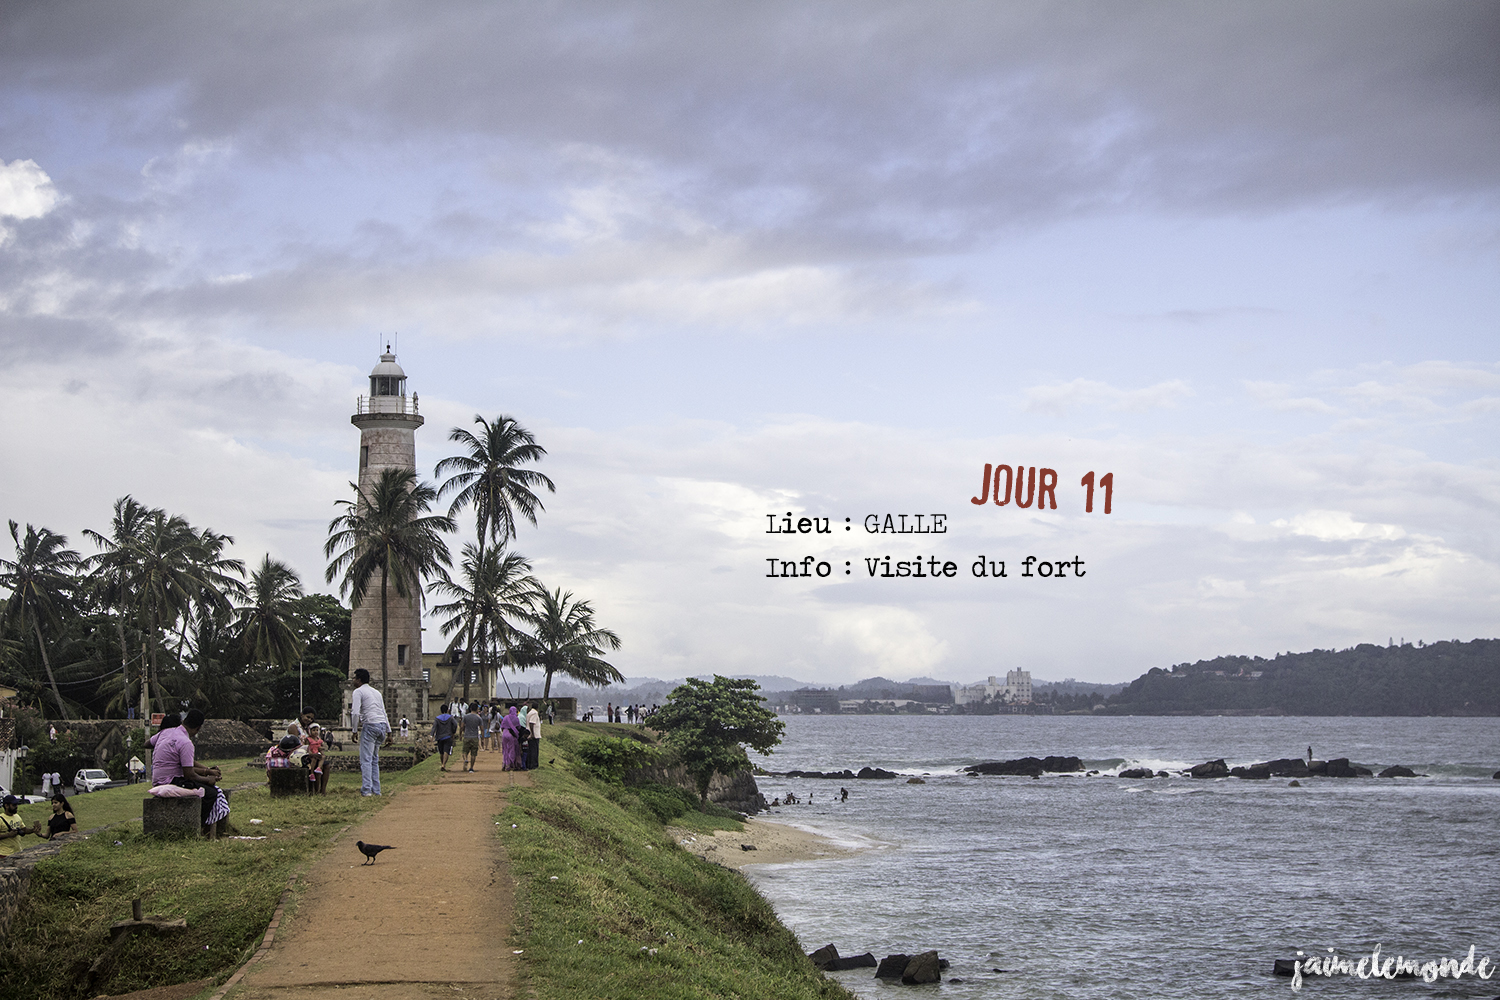 Voyage Sri Lanka - Itinéraire Jour 11 - 5 Galle - Visite du fort - ©jaimelemonde